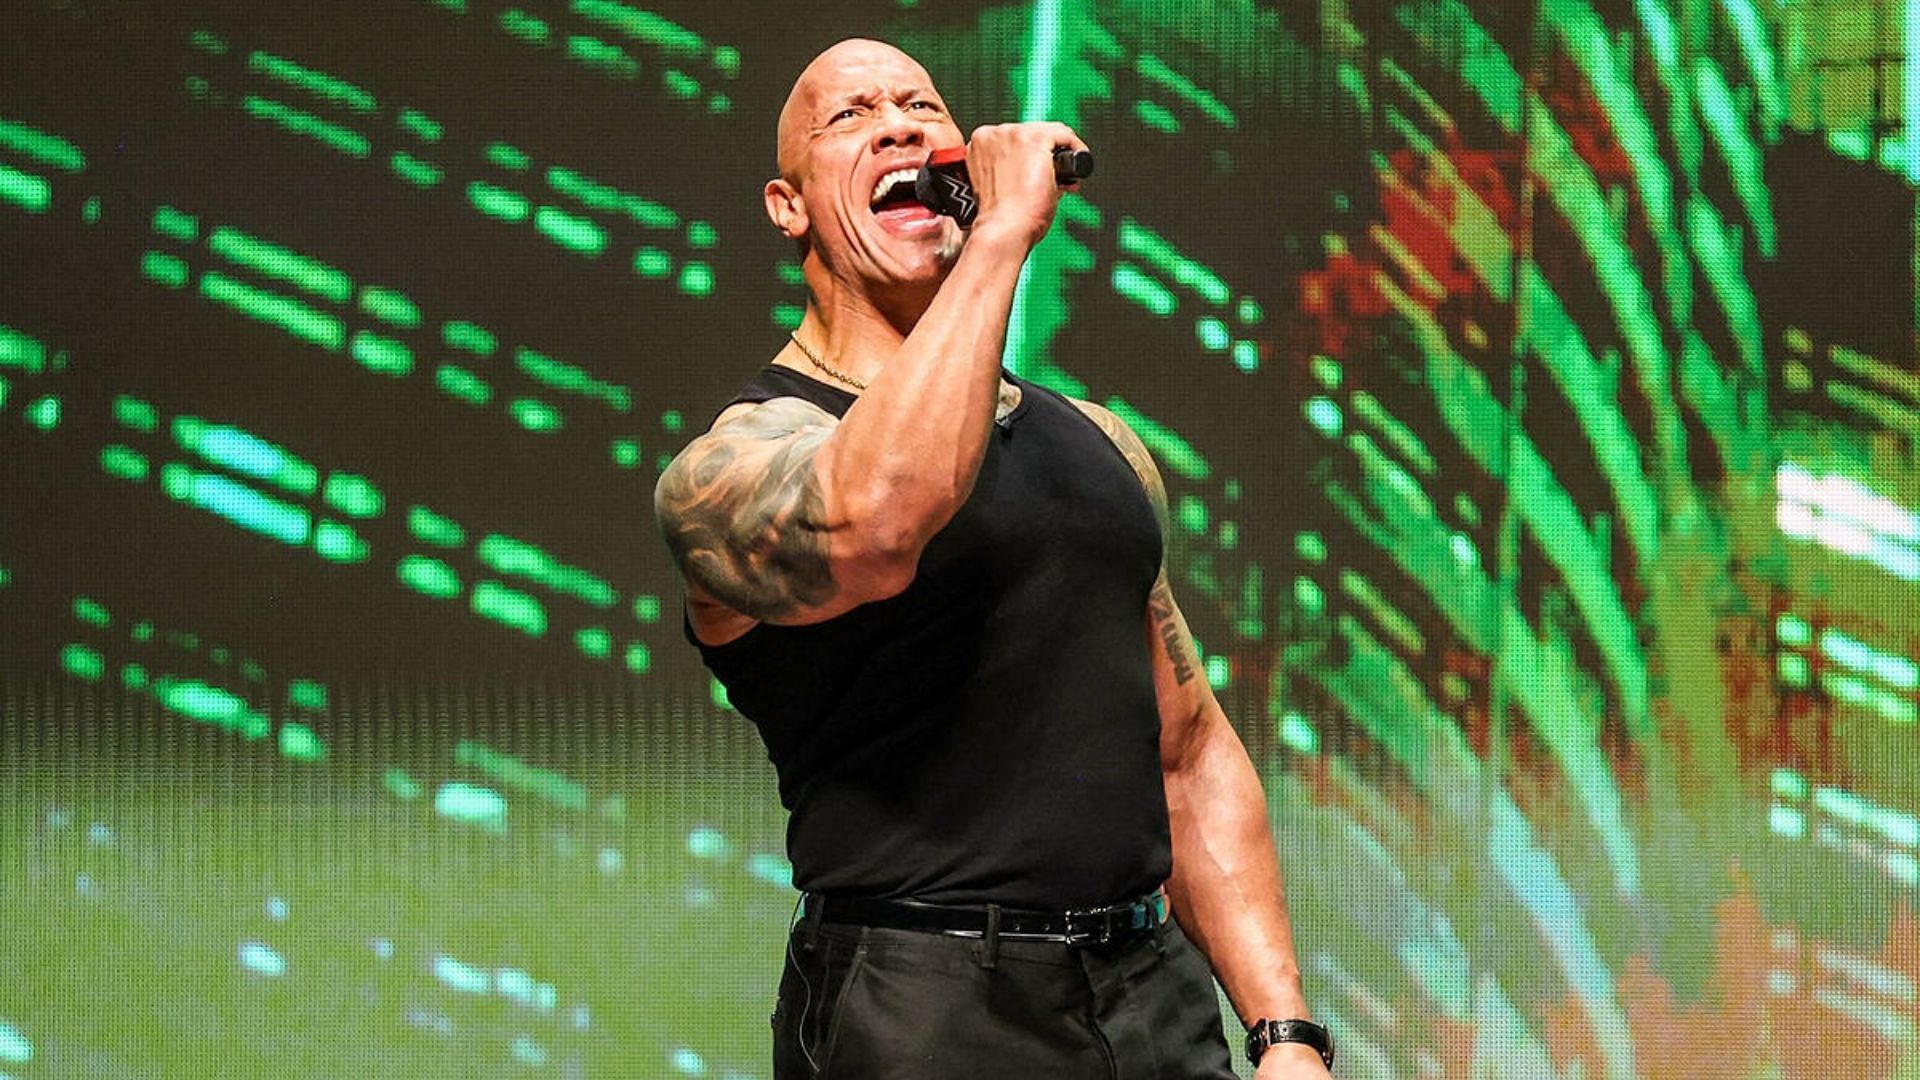 The Rock is a board member of WWE